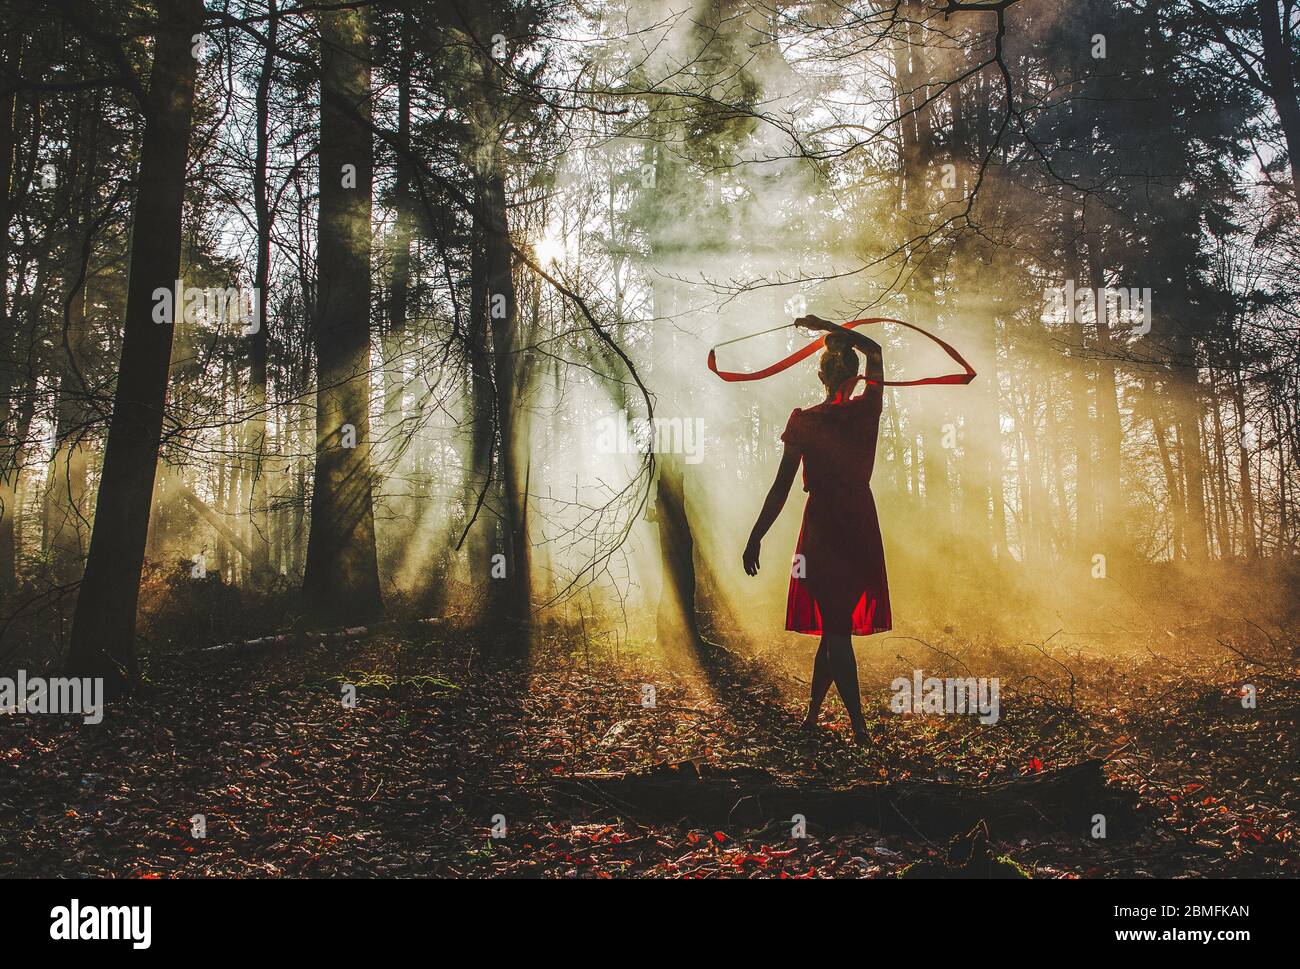 Eine Frau, die in einem Wald mit einem roten Band tanzt, während sie ein rotes Kleid trägt, während Sonnenstrahlen durch die Bäume scheinen Stockfoto